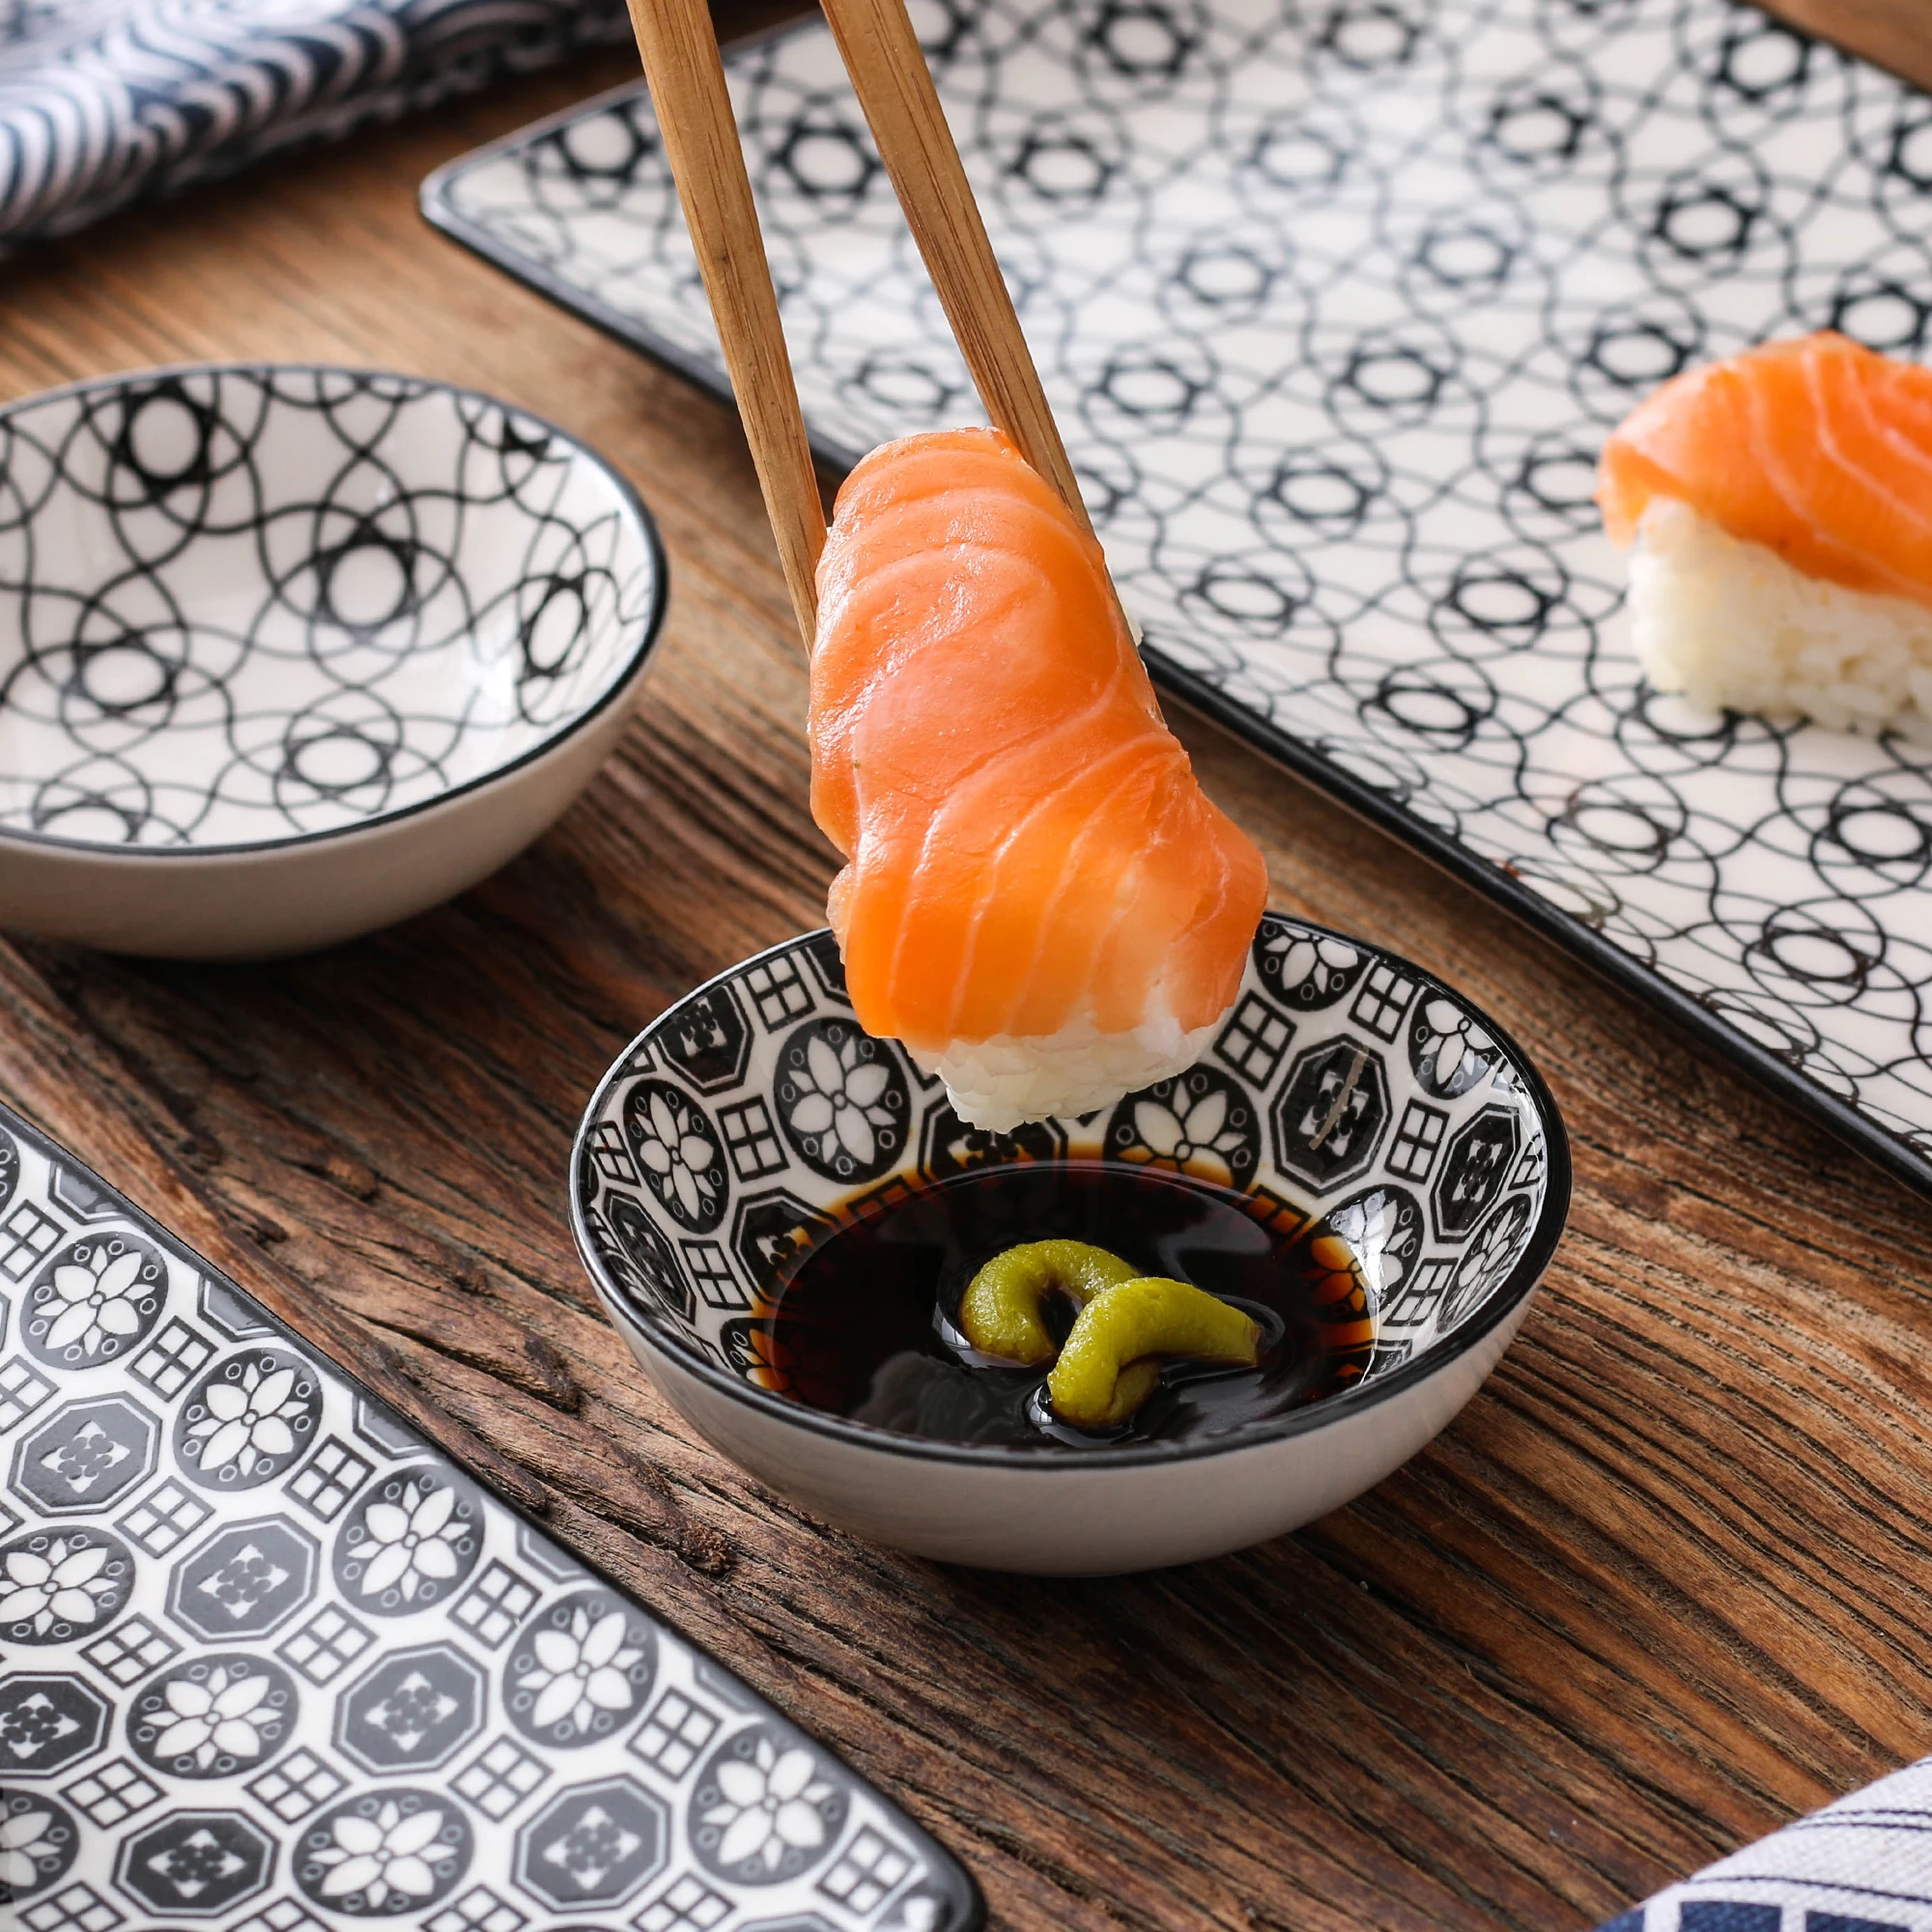 Estilo Japonés Pintado a Mano Vajillas 2 Pares de Palillos Madera 2 pequeños Platos de Salsas vancasso Serie Haruka Set de Sushi 6 Piezas 2 Platos para Sushi 